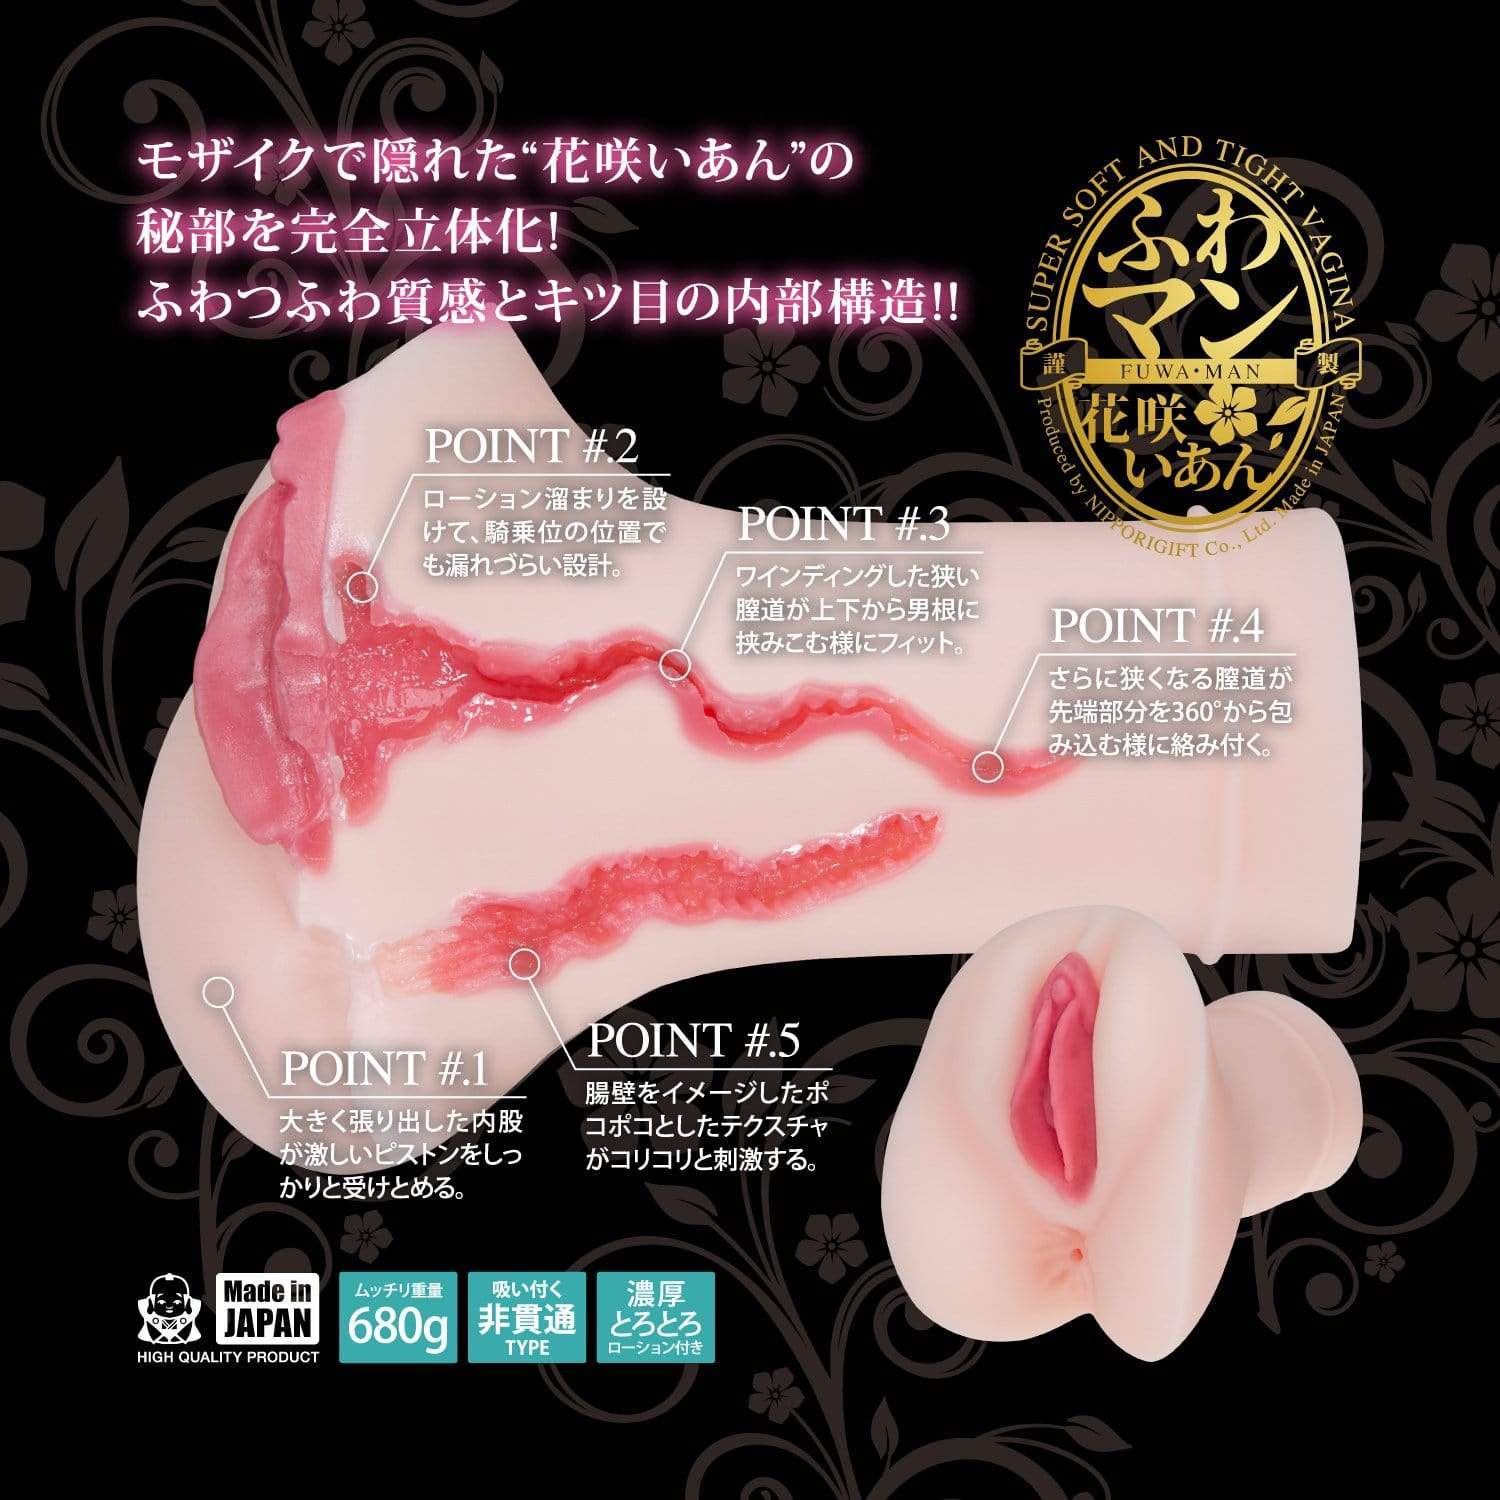 NPG - Japanese Porn Star Collection Fuwa Man Ian Hanasaki Meiki Onahole (Beige) Masturbator Vagina (Non Vibration)